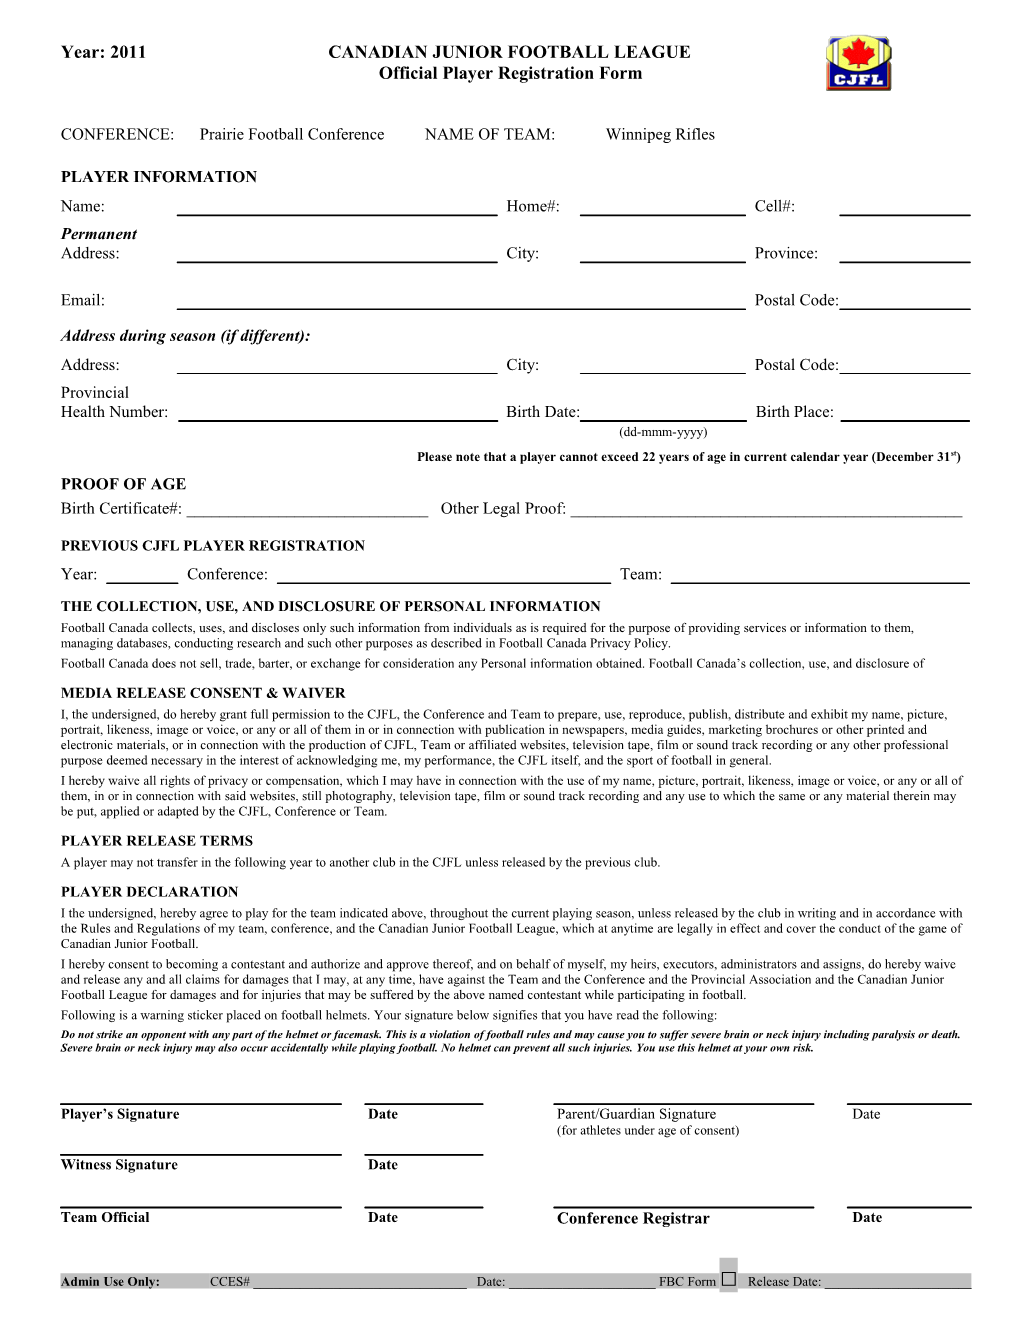 CJFL Registration Form